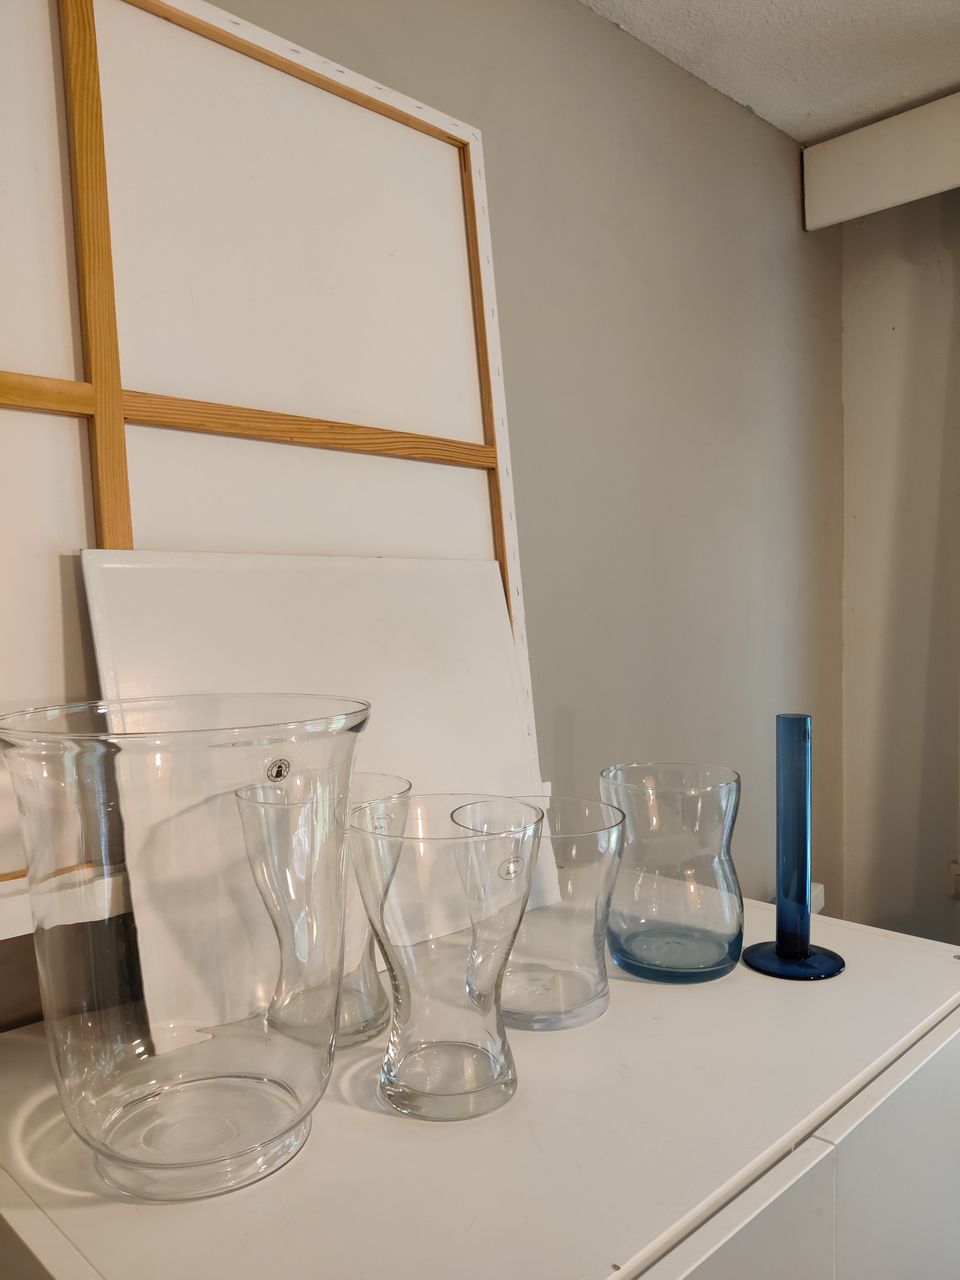 IKEA lasitavaraa (maljakko, vaasi, lyhty, tuikkukippoja)